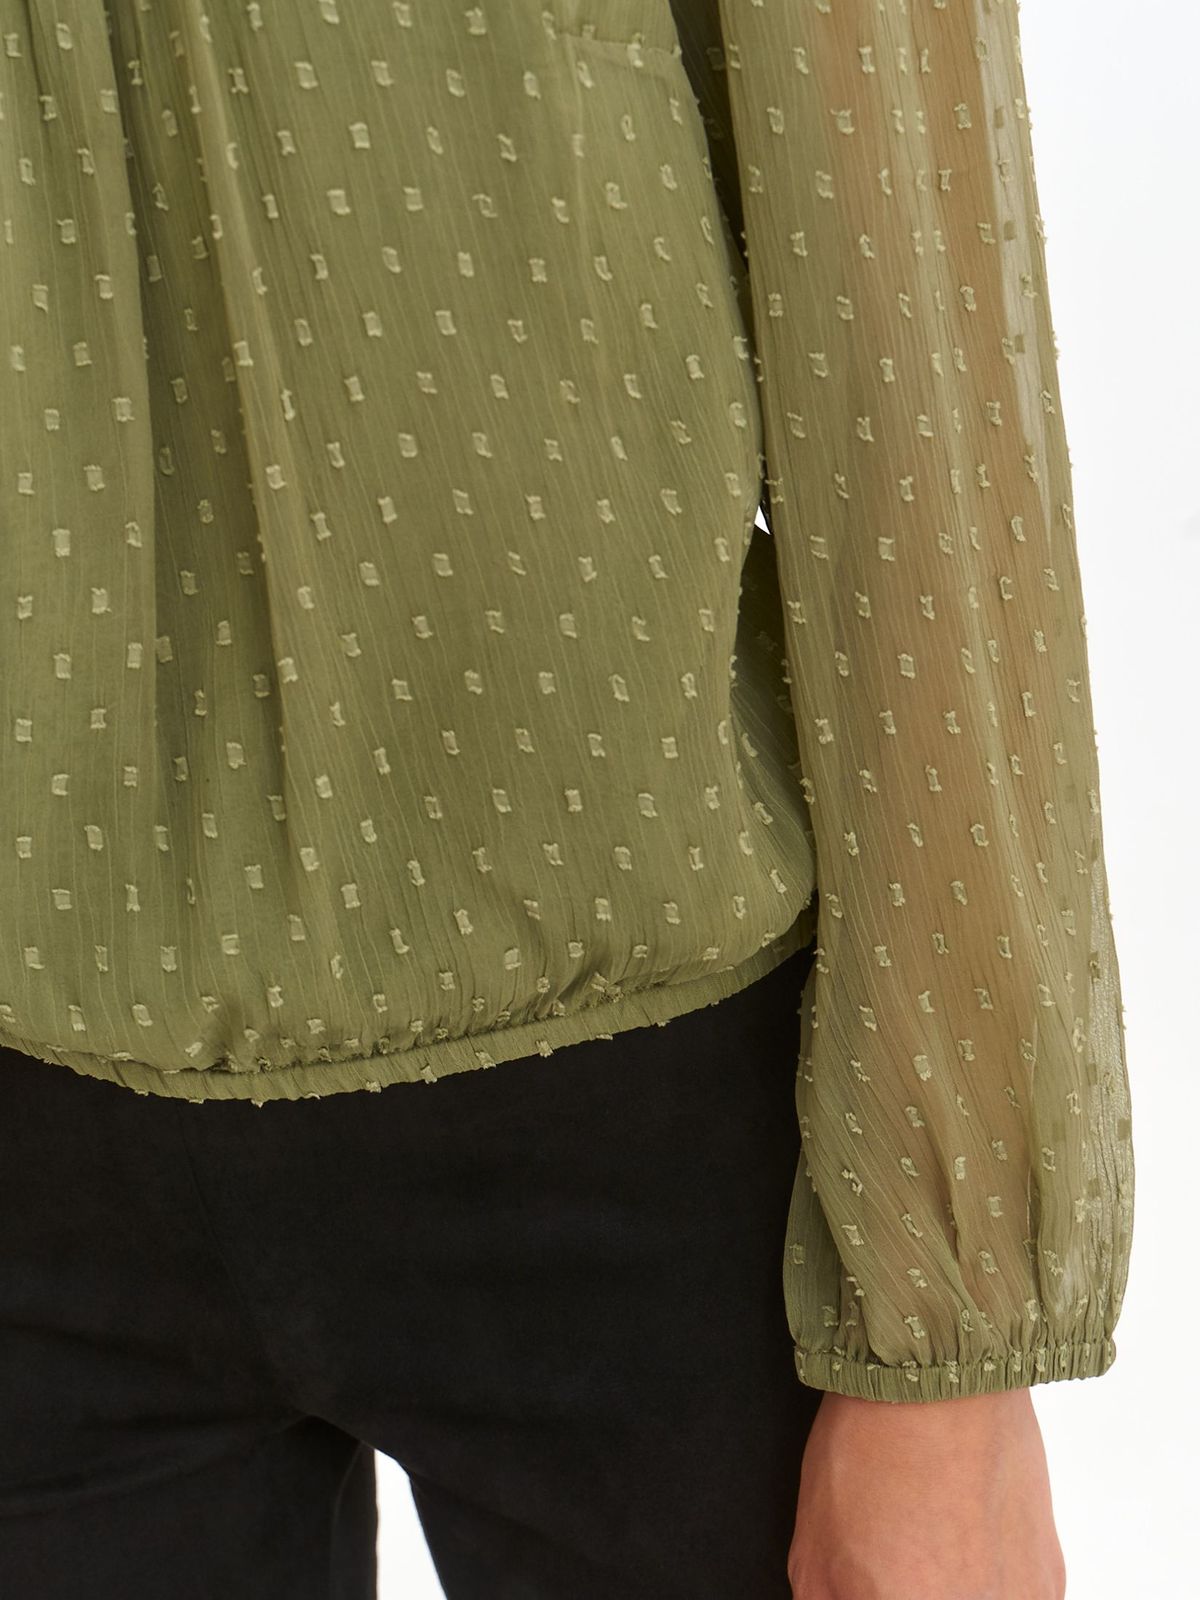 Muszlin bő szabású női blúz - khaki zöld, bő és gumírozott ujjakkal 5 - StarShinerS.hu